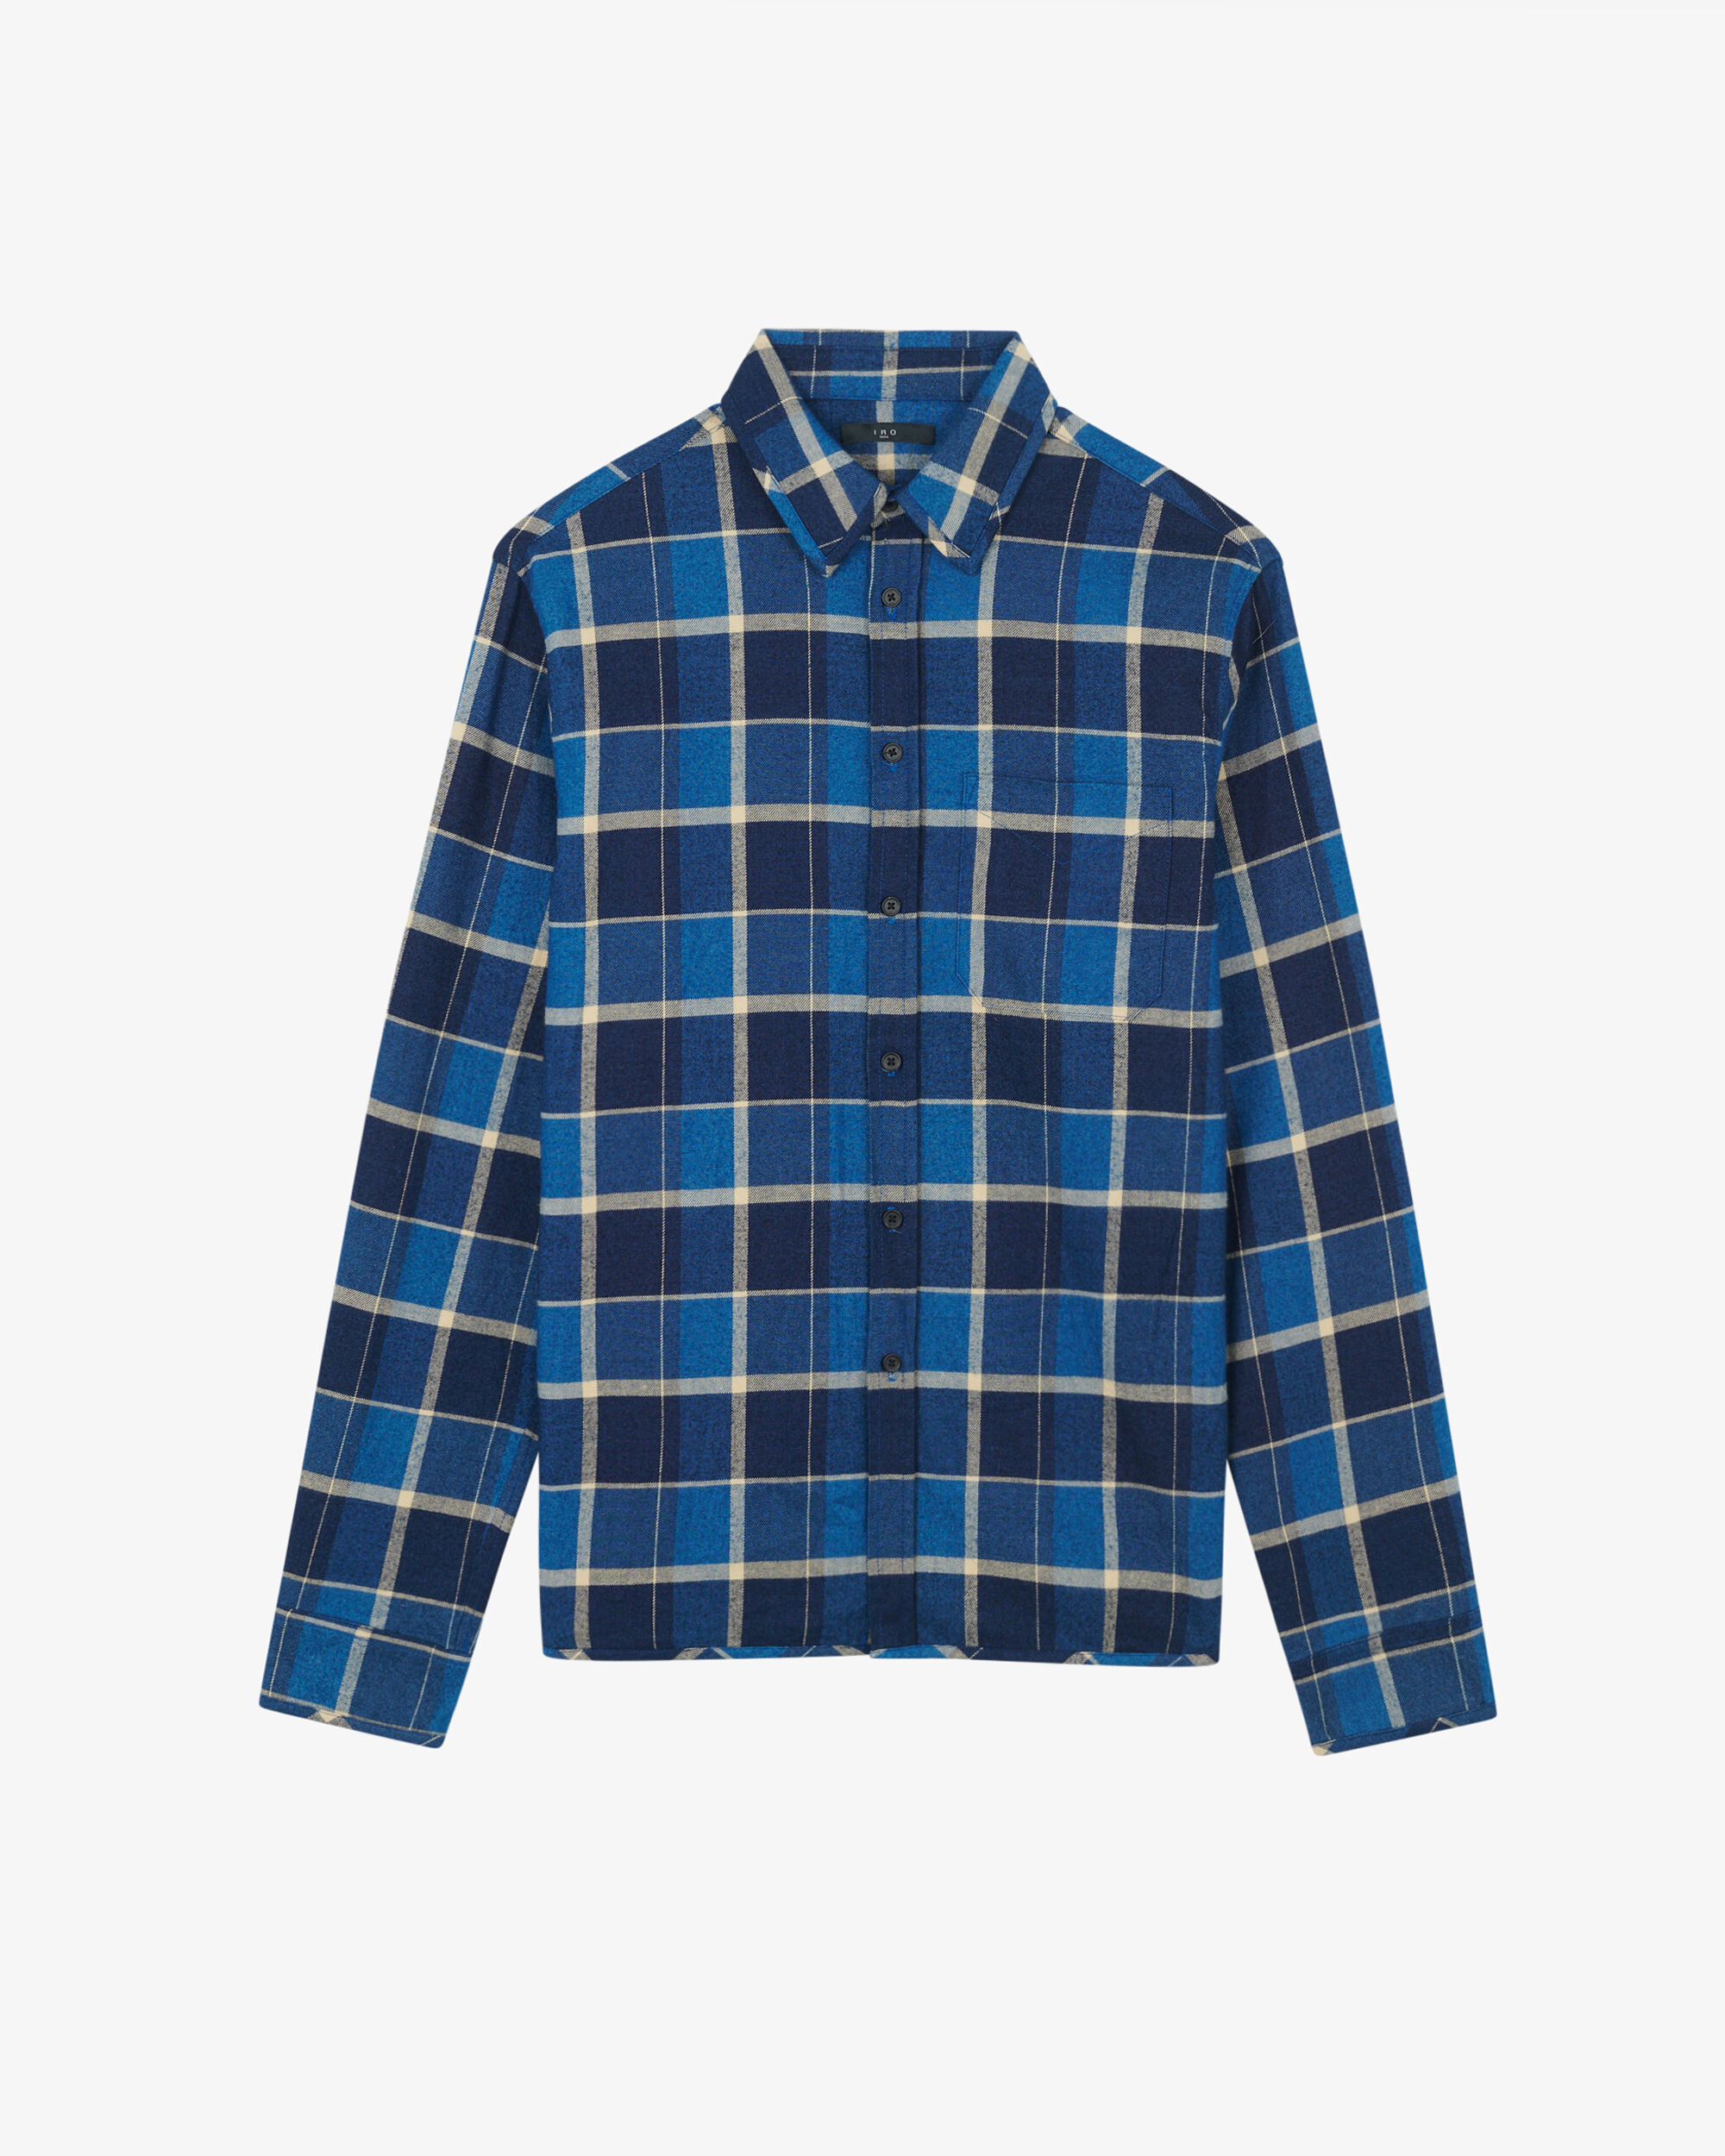 Men's shirts - IRO | Official online store